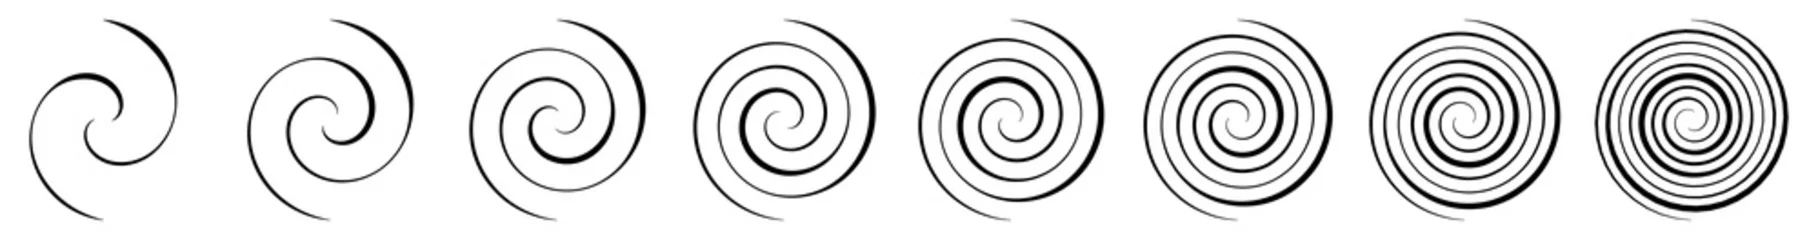 Foto auf Alu-Dibond Spiral, swirl, twirl and whirl element. Helix, volute ripple, vortex shape © Pixxsa